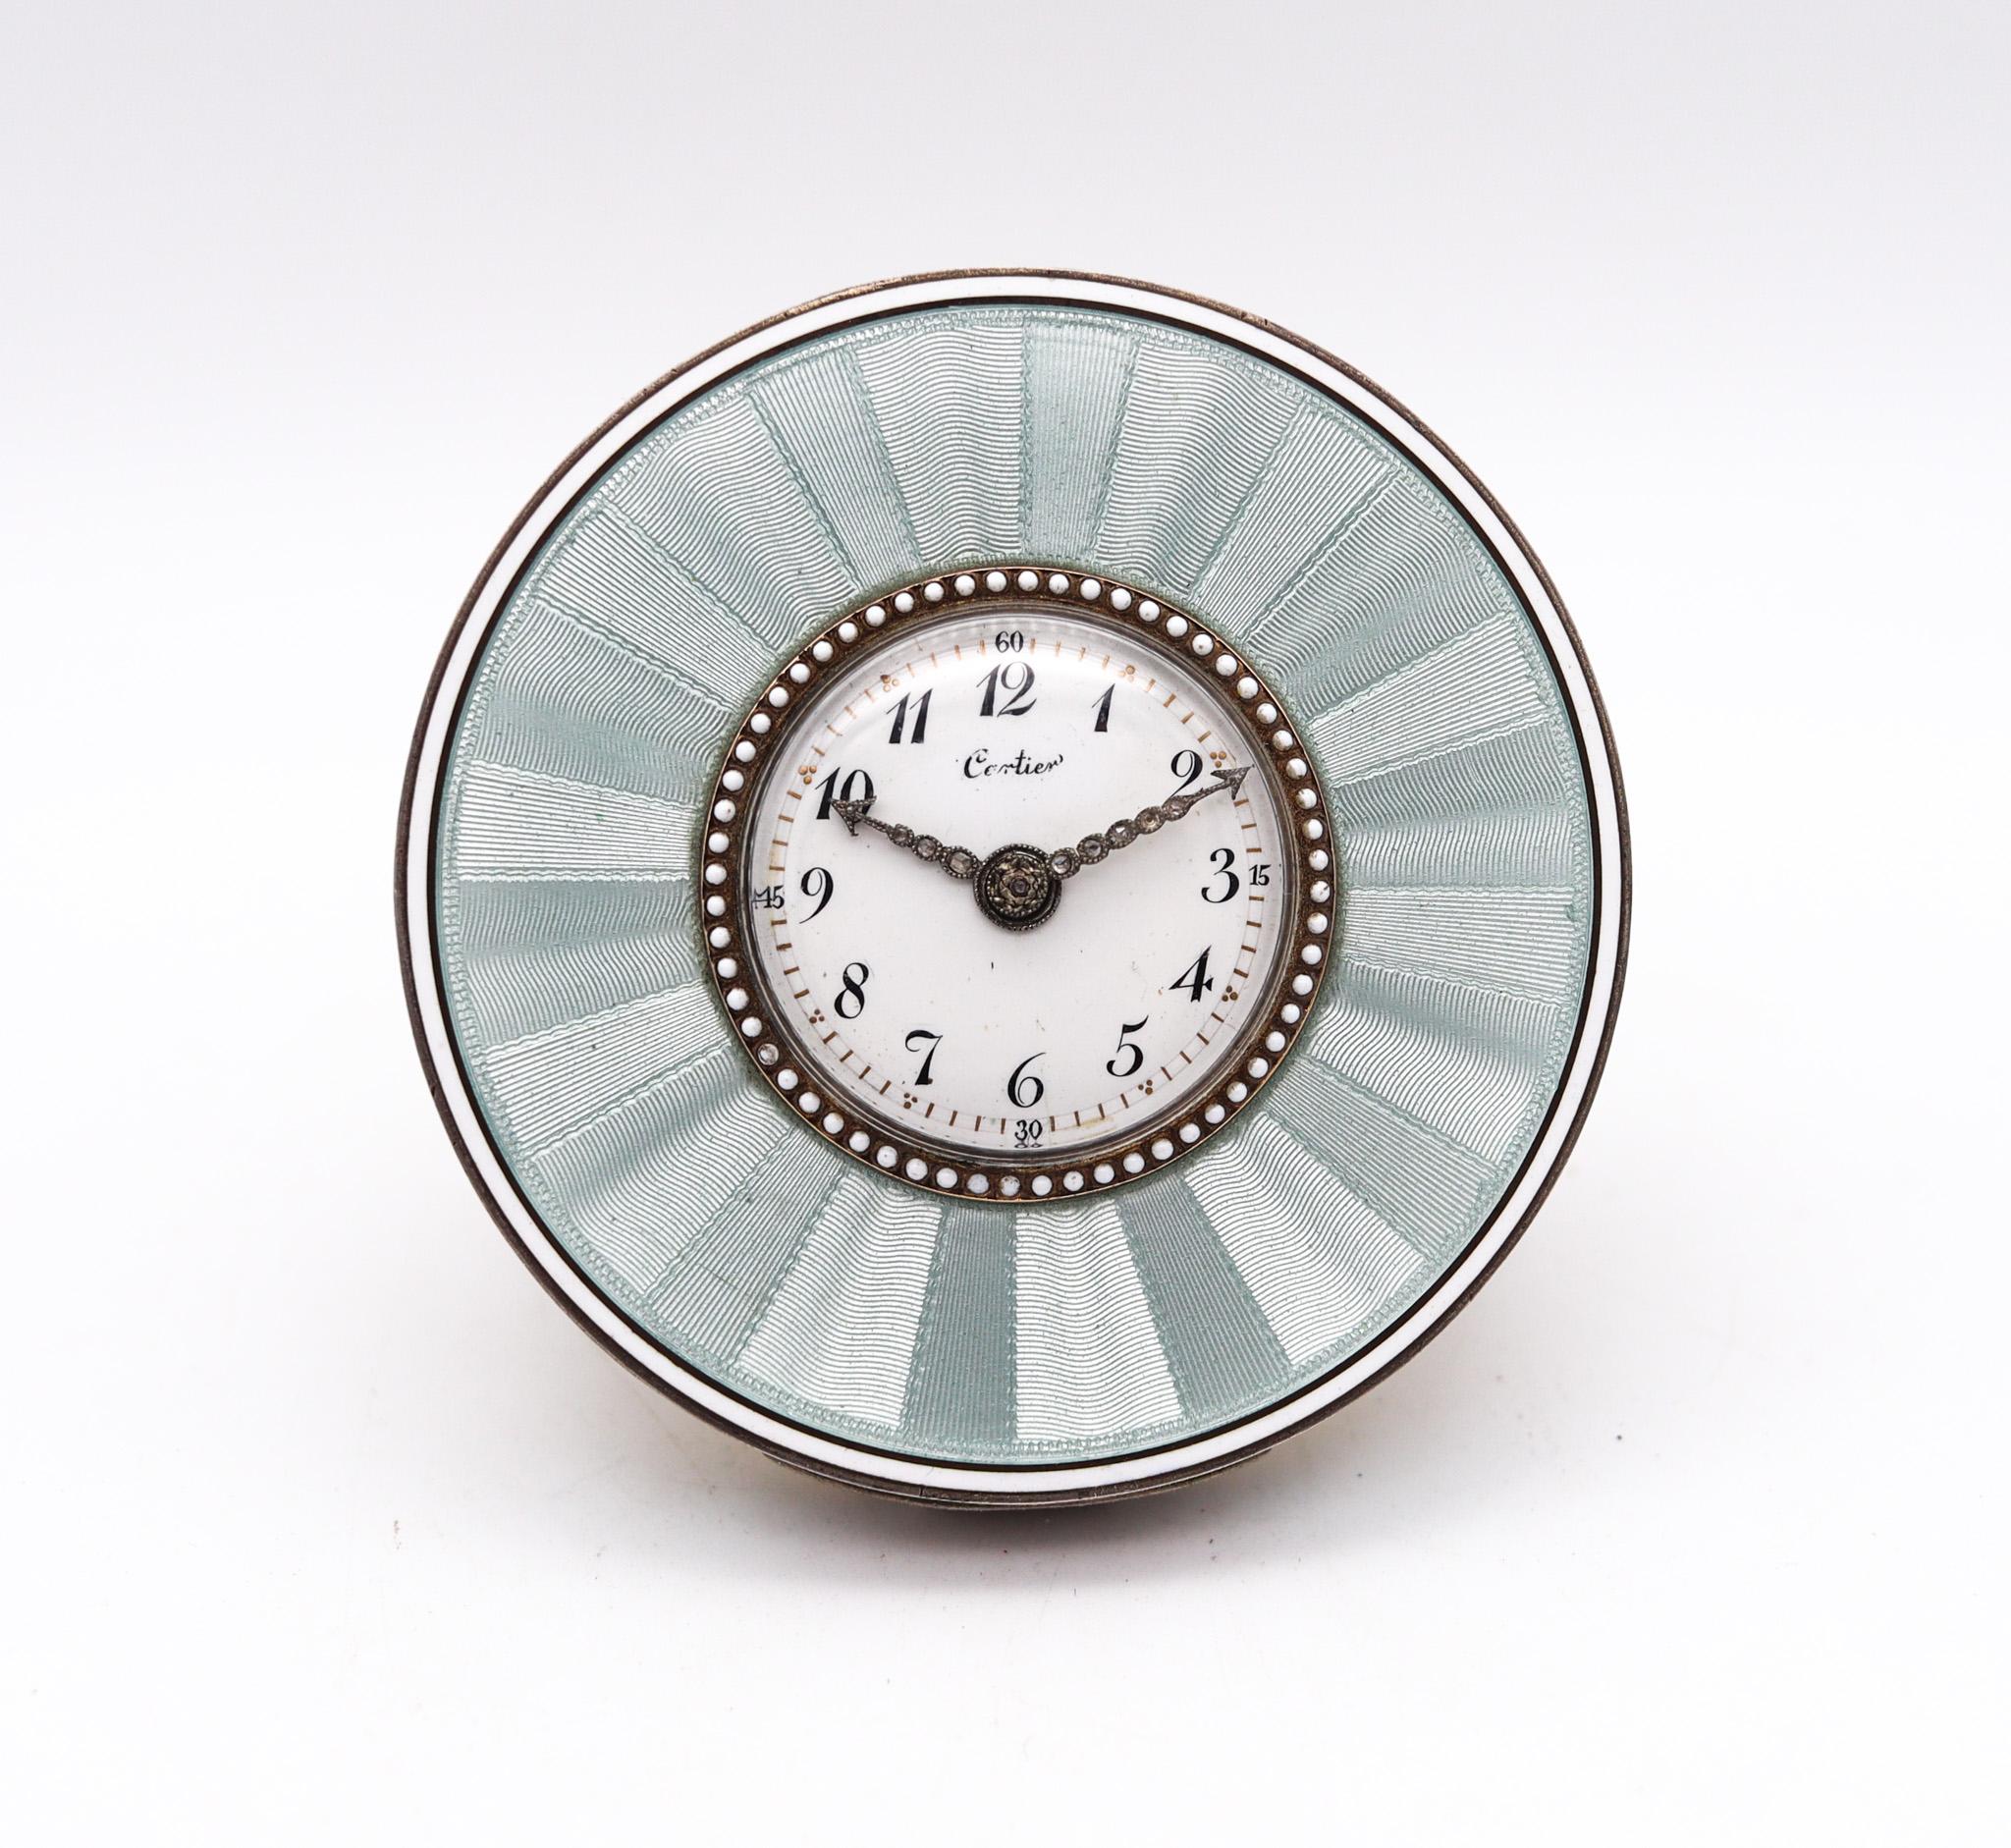 Pendule de bureau de la Belle Époque, conçue par Cartier.

Une très rare et magnifique horloge de bureau ronde, créée à Paris en France par la maison Cartier, à l'époque de la Belle Epoque édouardienne, dans les années 1910. Cette superbe pièce a